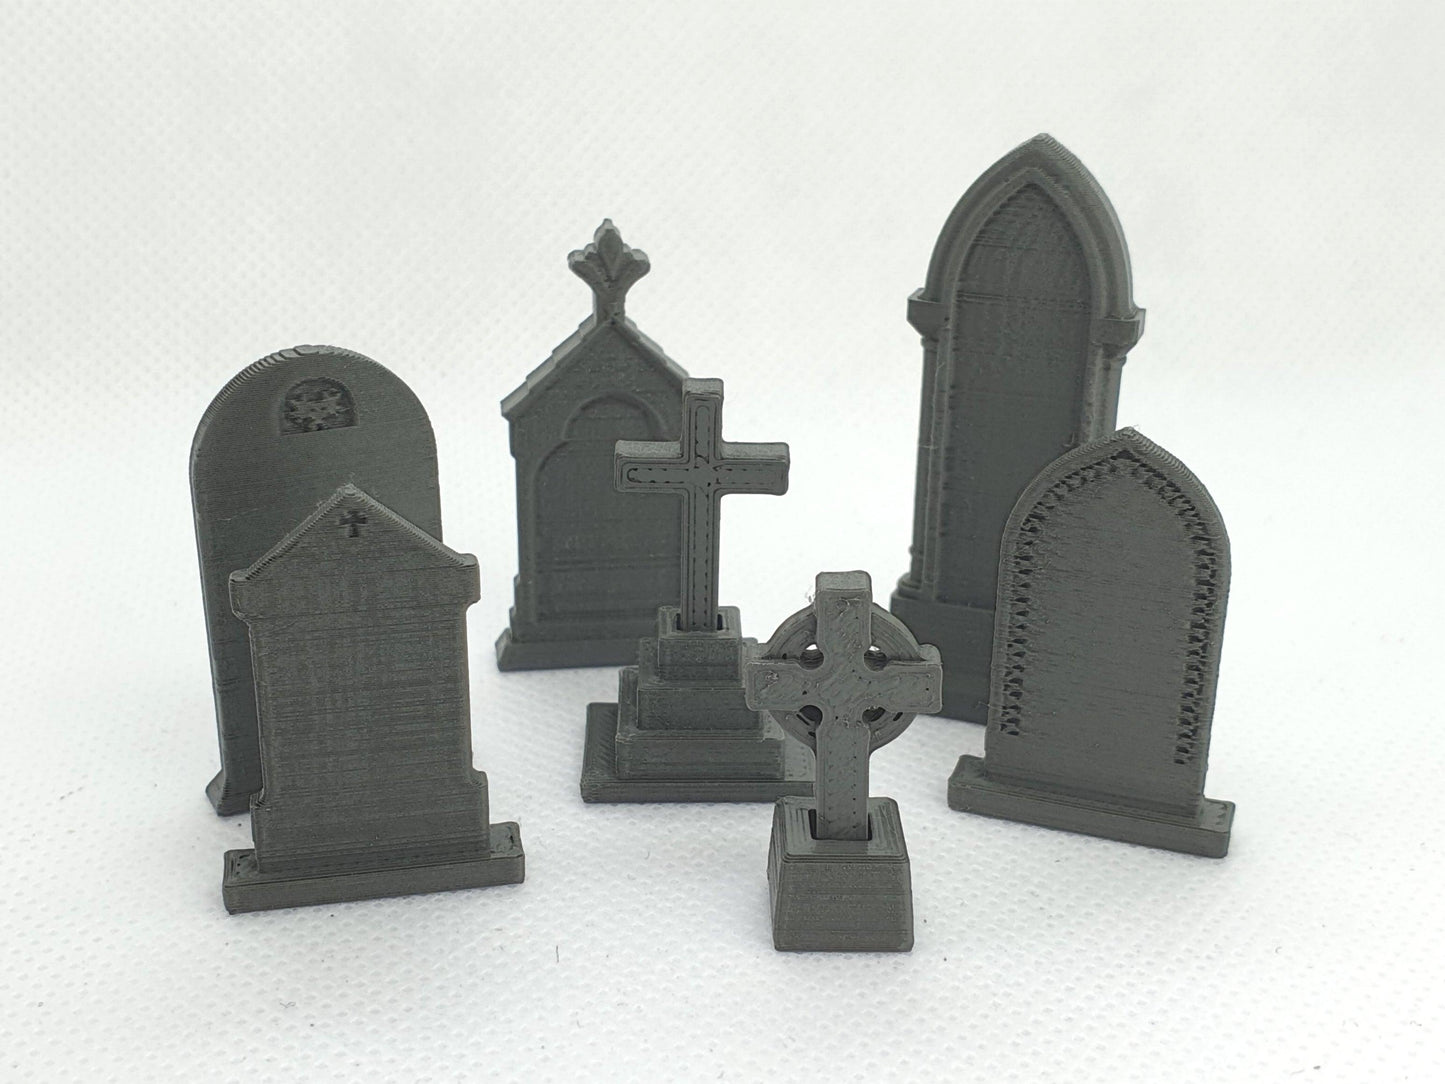 O gauge scale models of old gravestones - Three Peaks Models